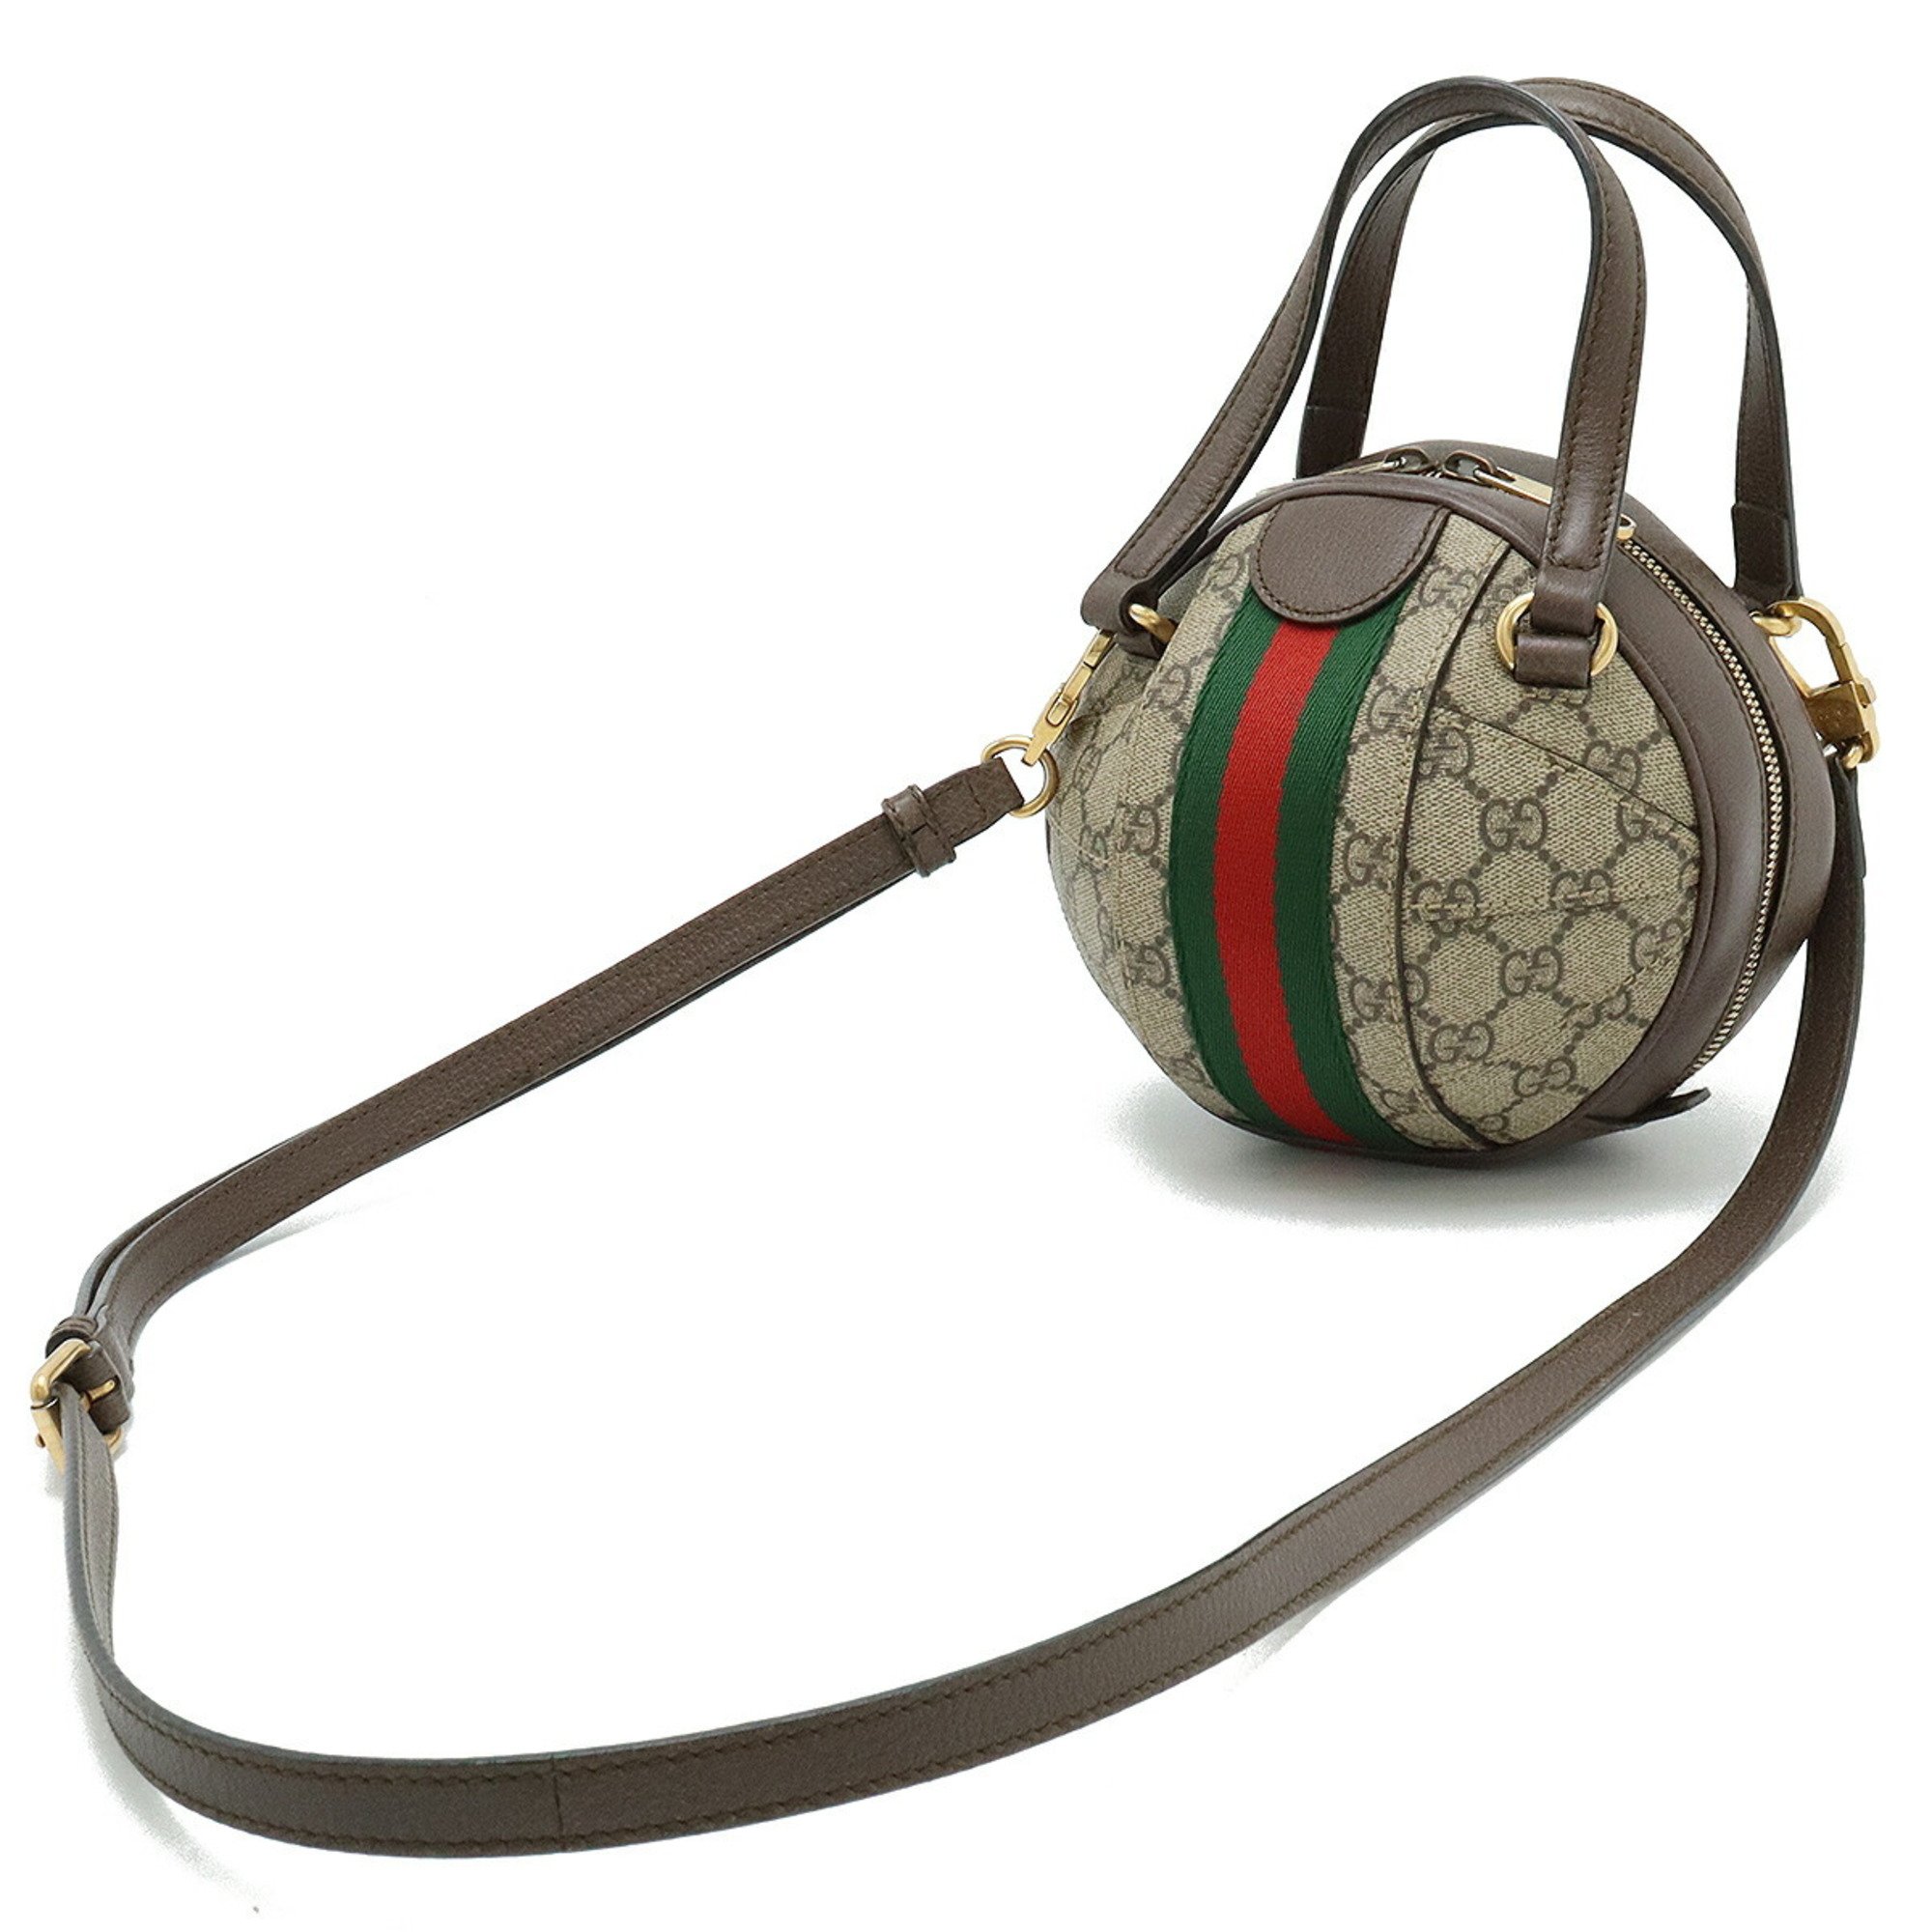 GUCCI Ophidia GG Supreme Handbag Shoulder Bag Ball Shape PVC Leather Beige Mocha Brown 574794